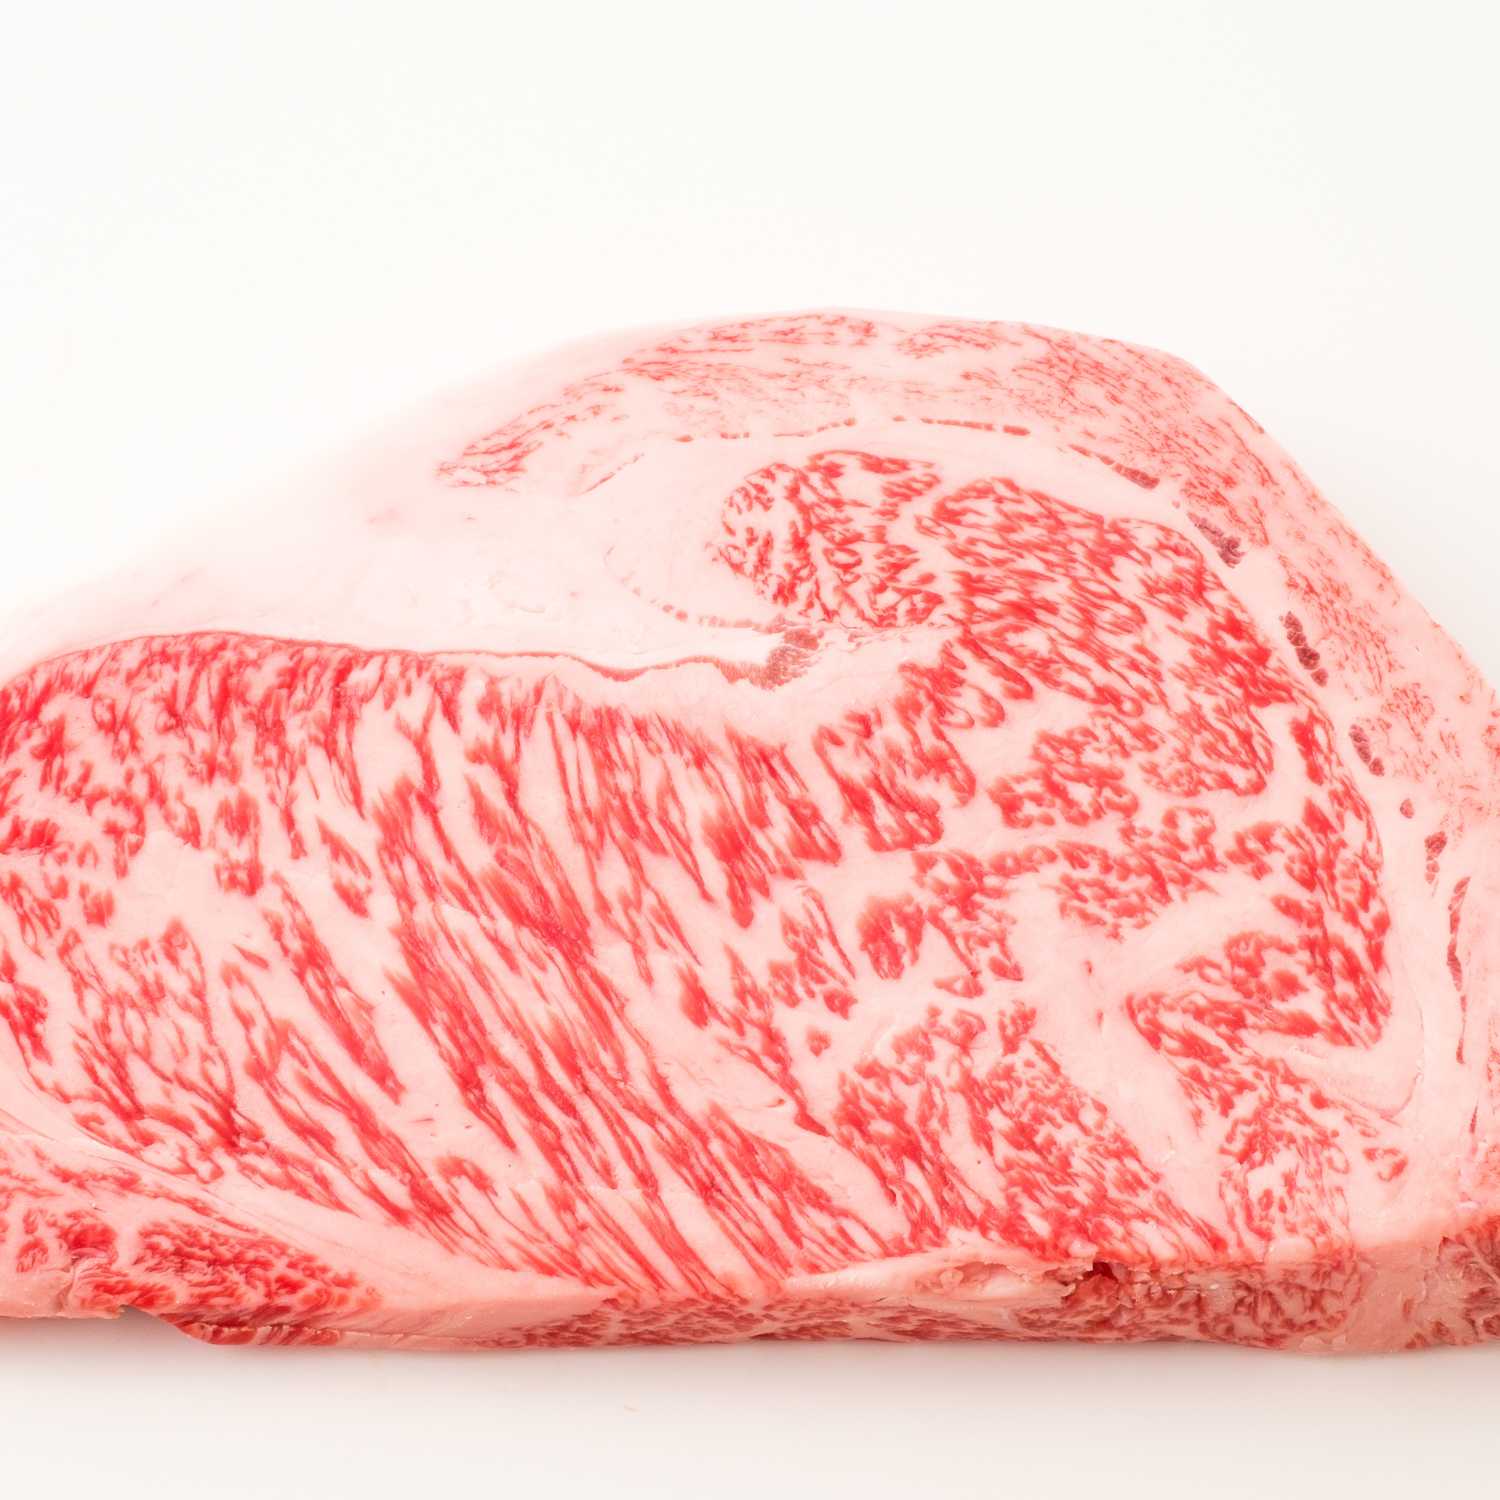 Korean Premium Hanwoo Ribeye Steak 1++ Grade Luxury Beef from MeatKing.hk0